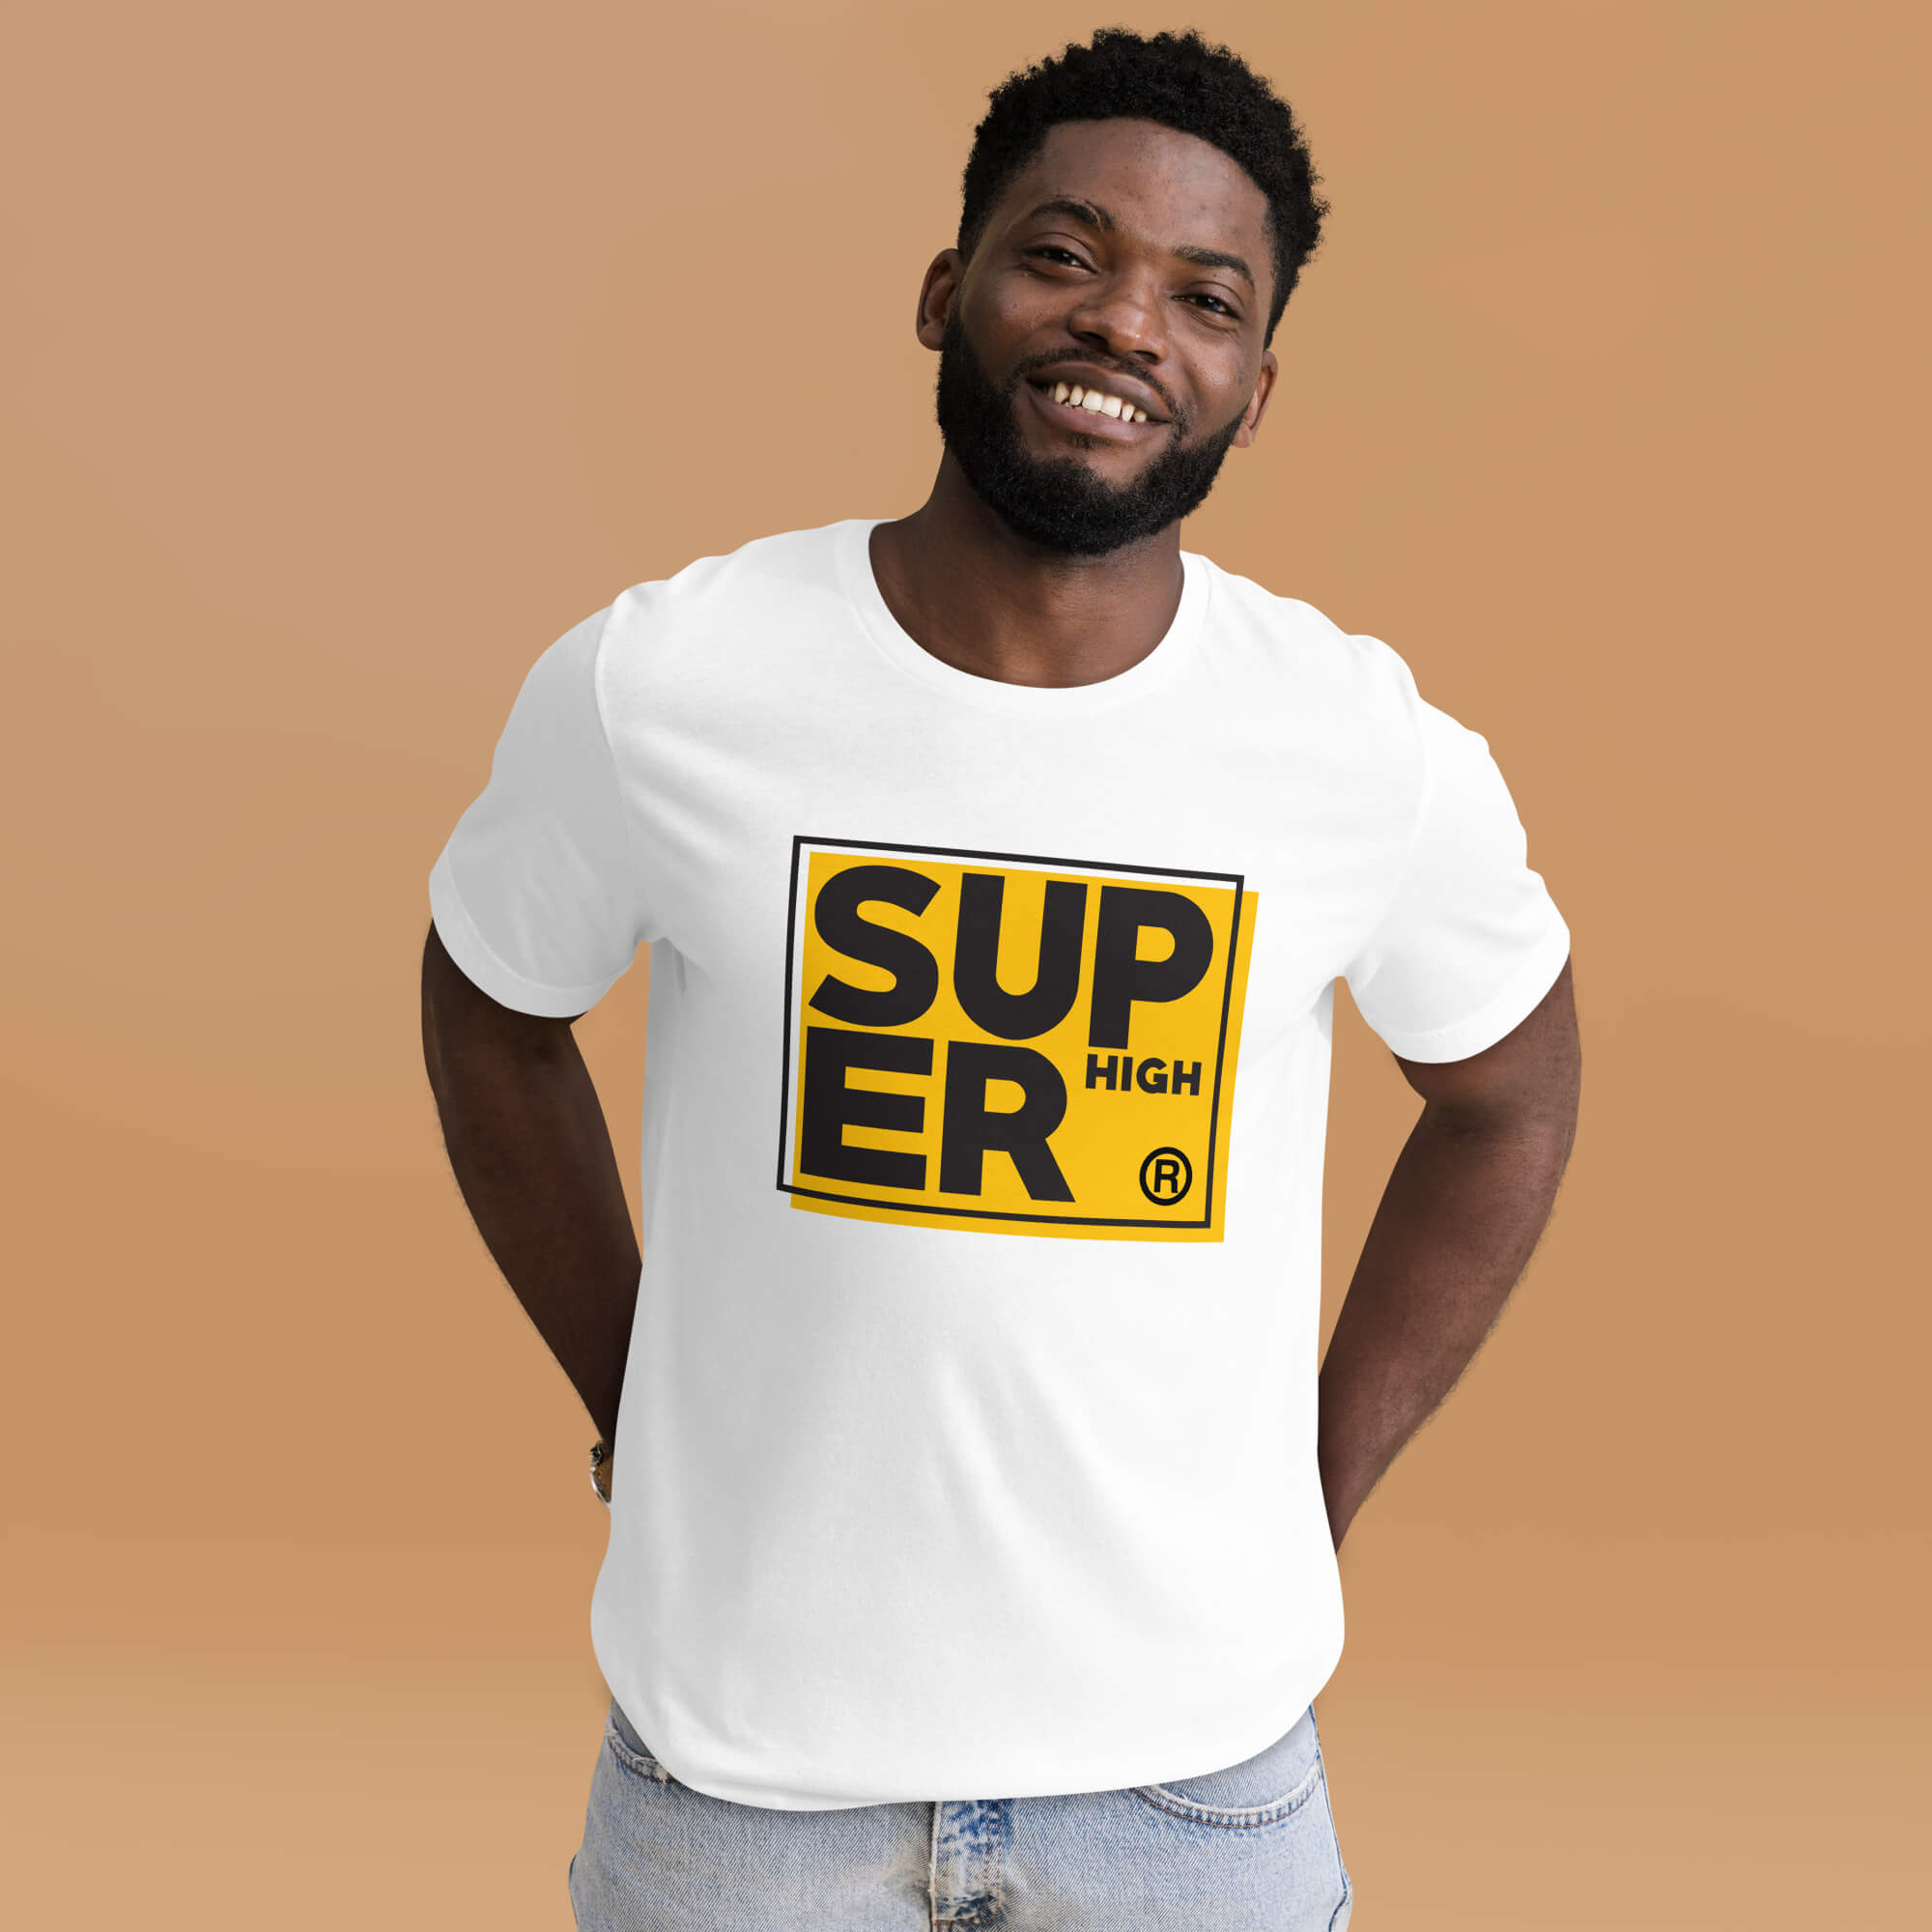 Super High Camiseta